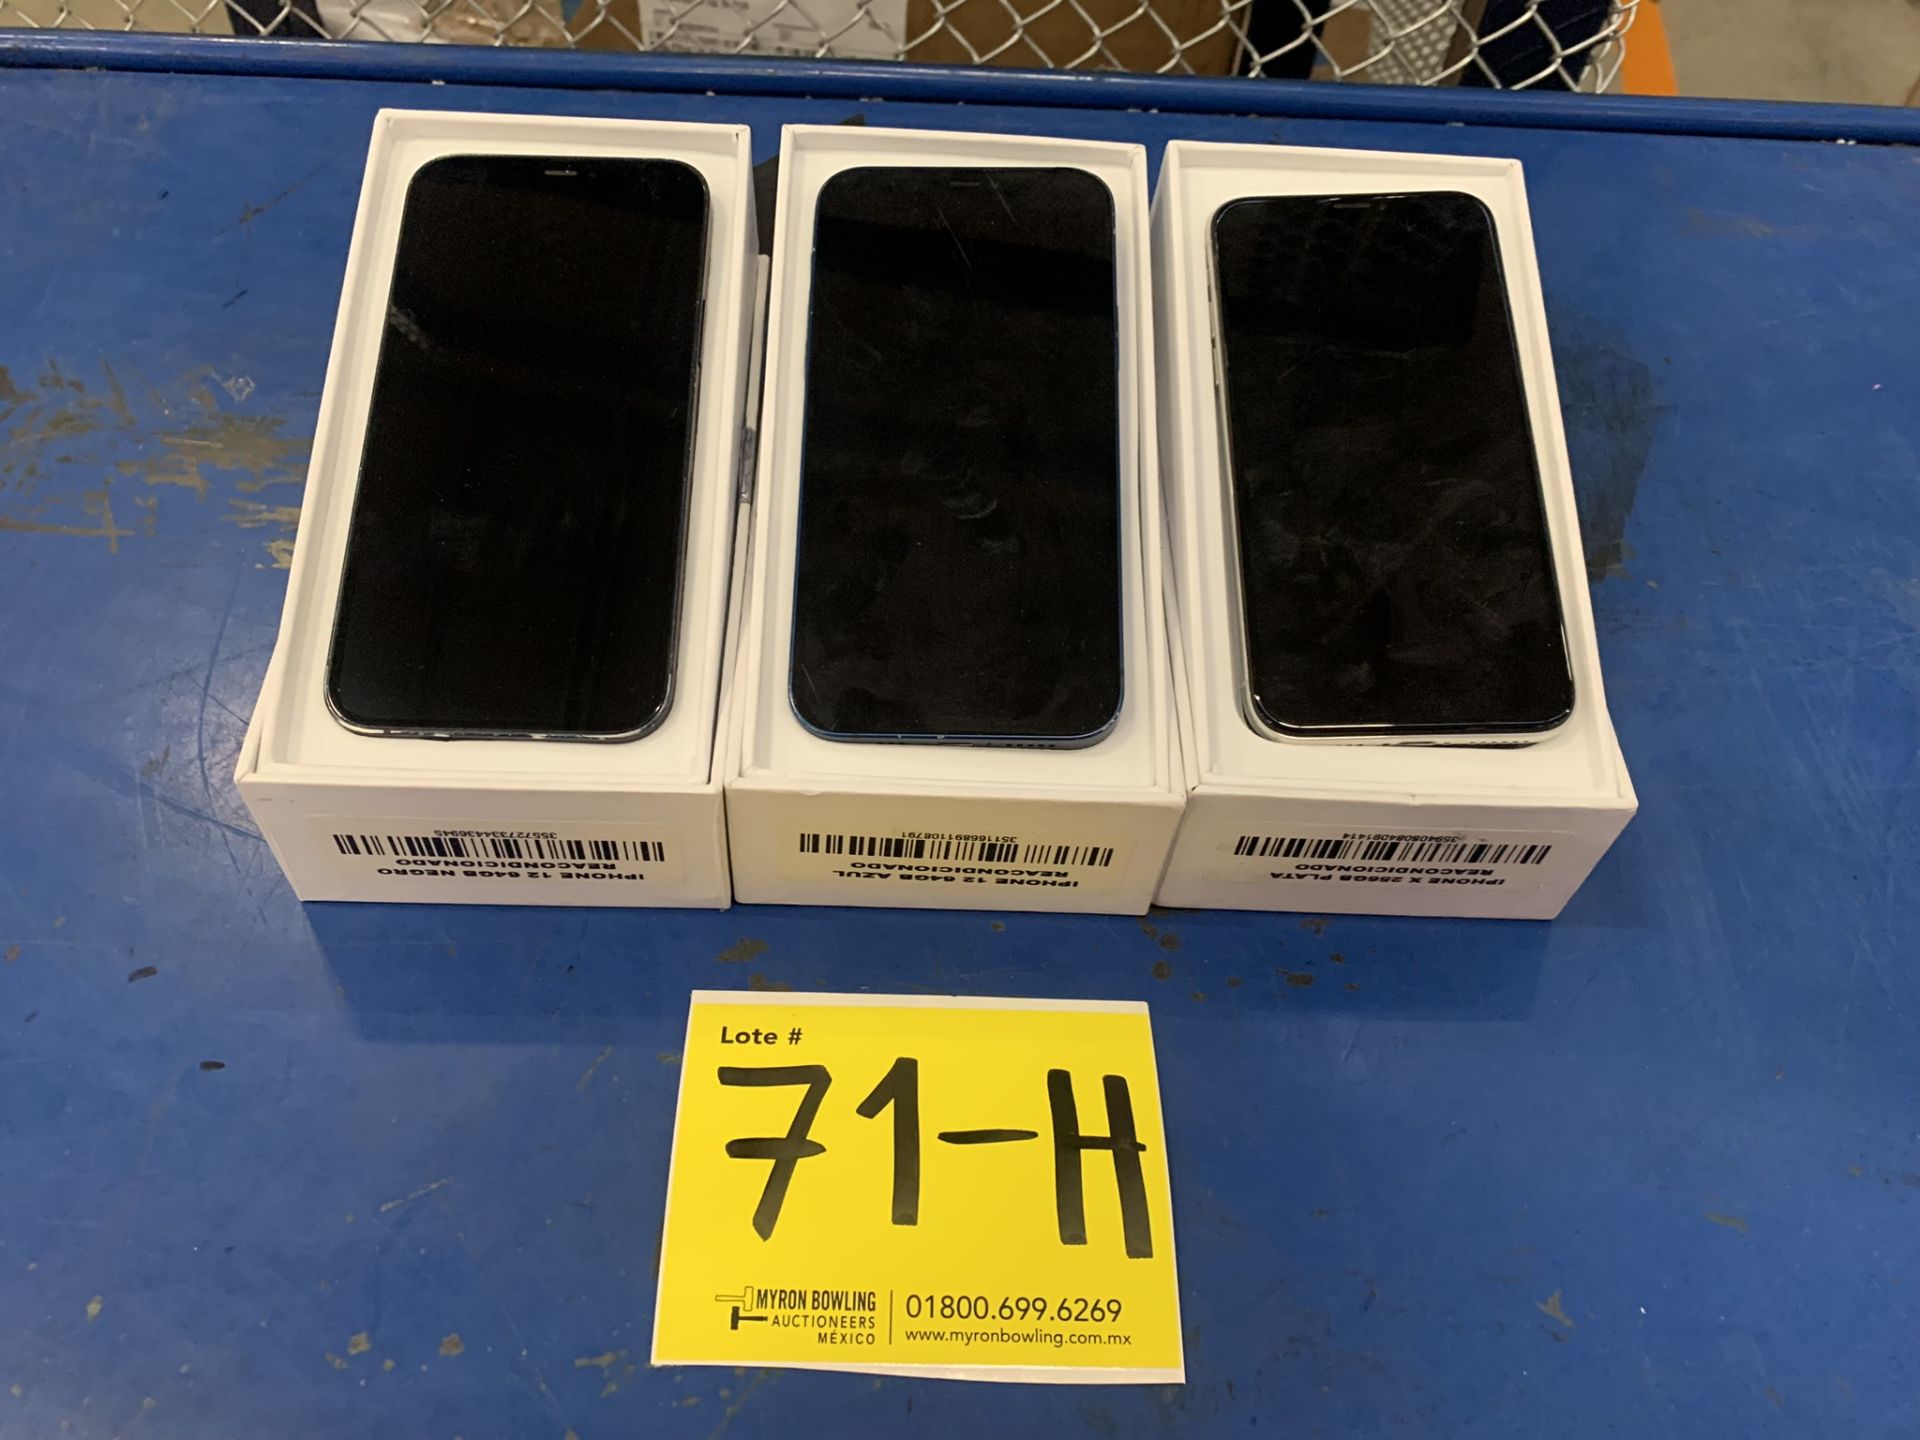 Lote De 3 Teléfonos Celular Contiene: 1 Iphone Marca Apple, Modelo 12, Color Negro, 64 GB De Al - Image 7 of 8